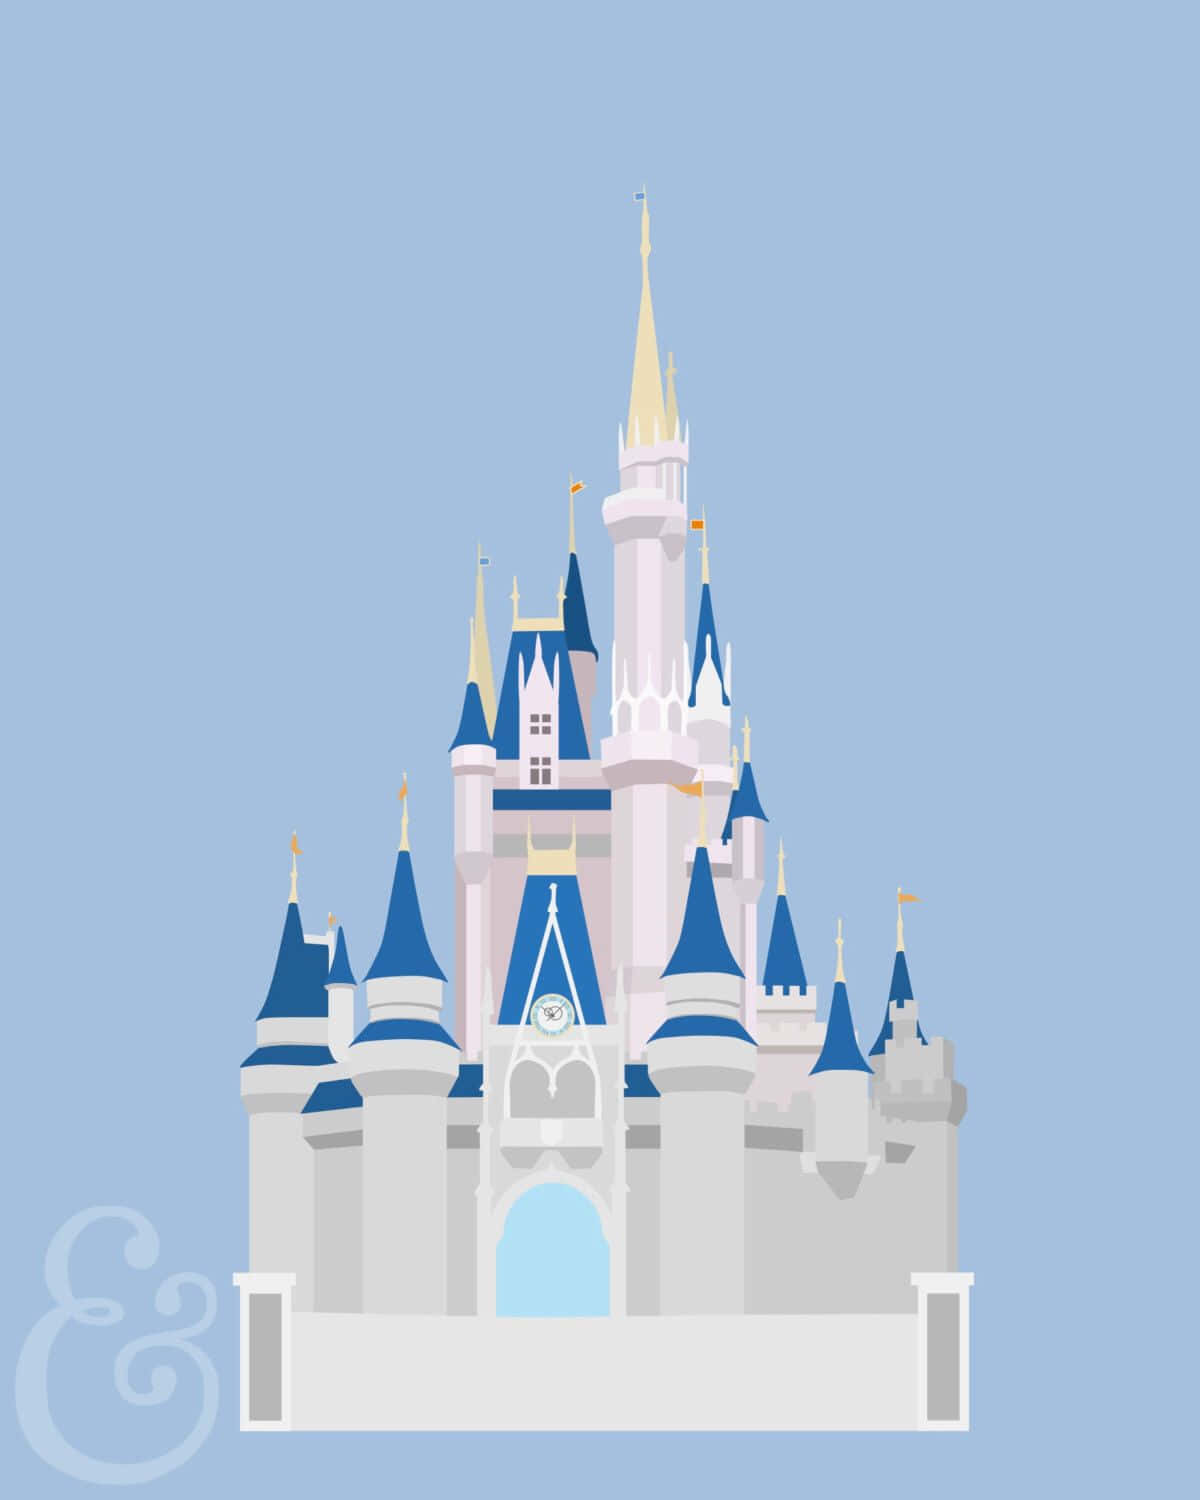 Esplorala Magia Dell'iconico Castello Di Disney!